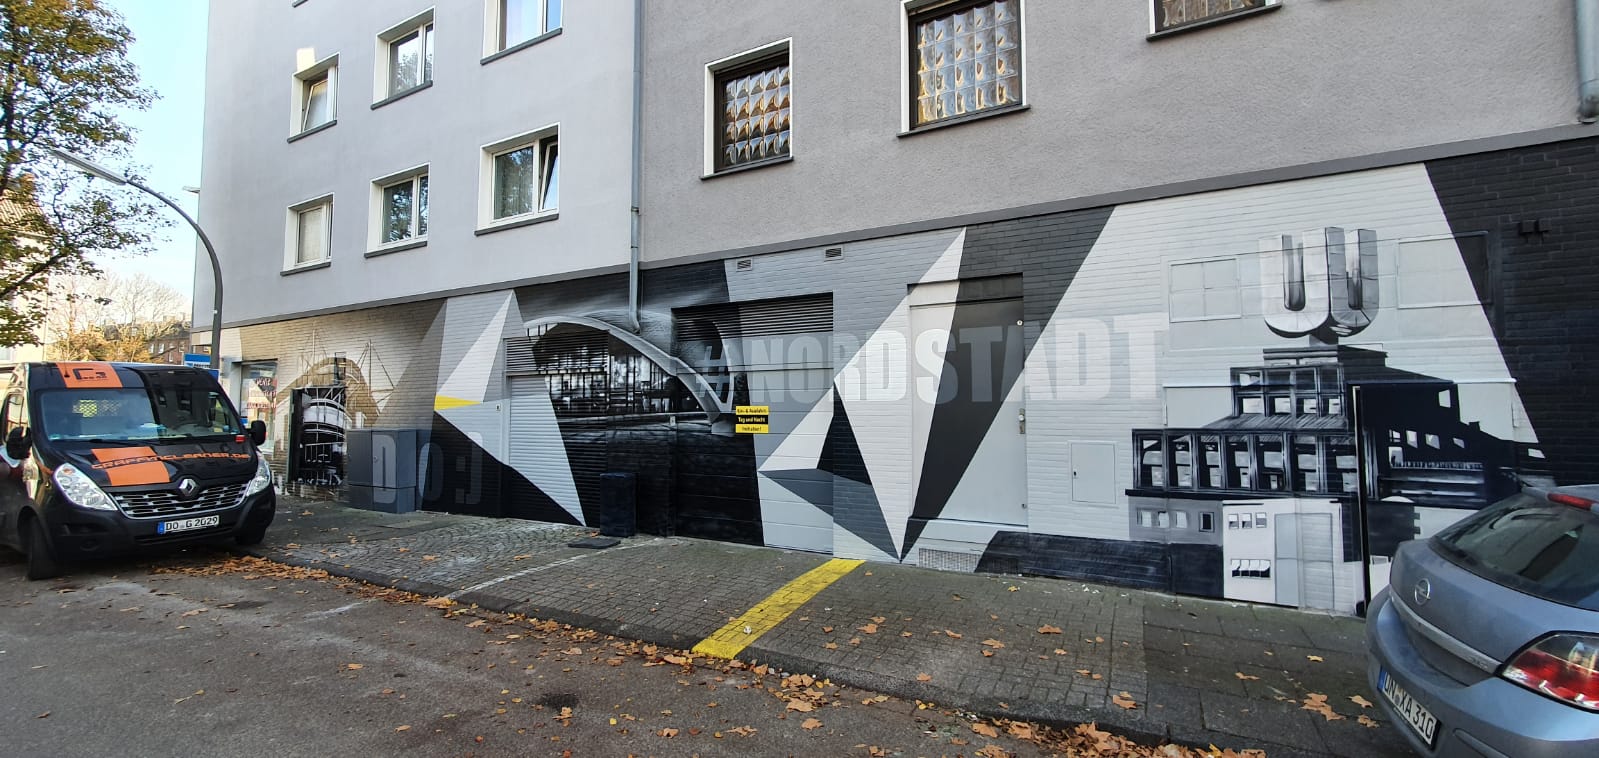 Graffitischutz Dortmund